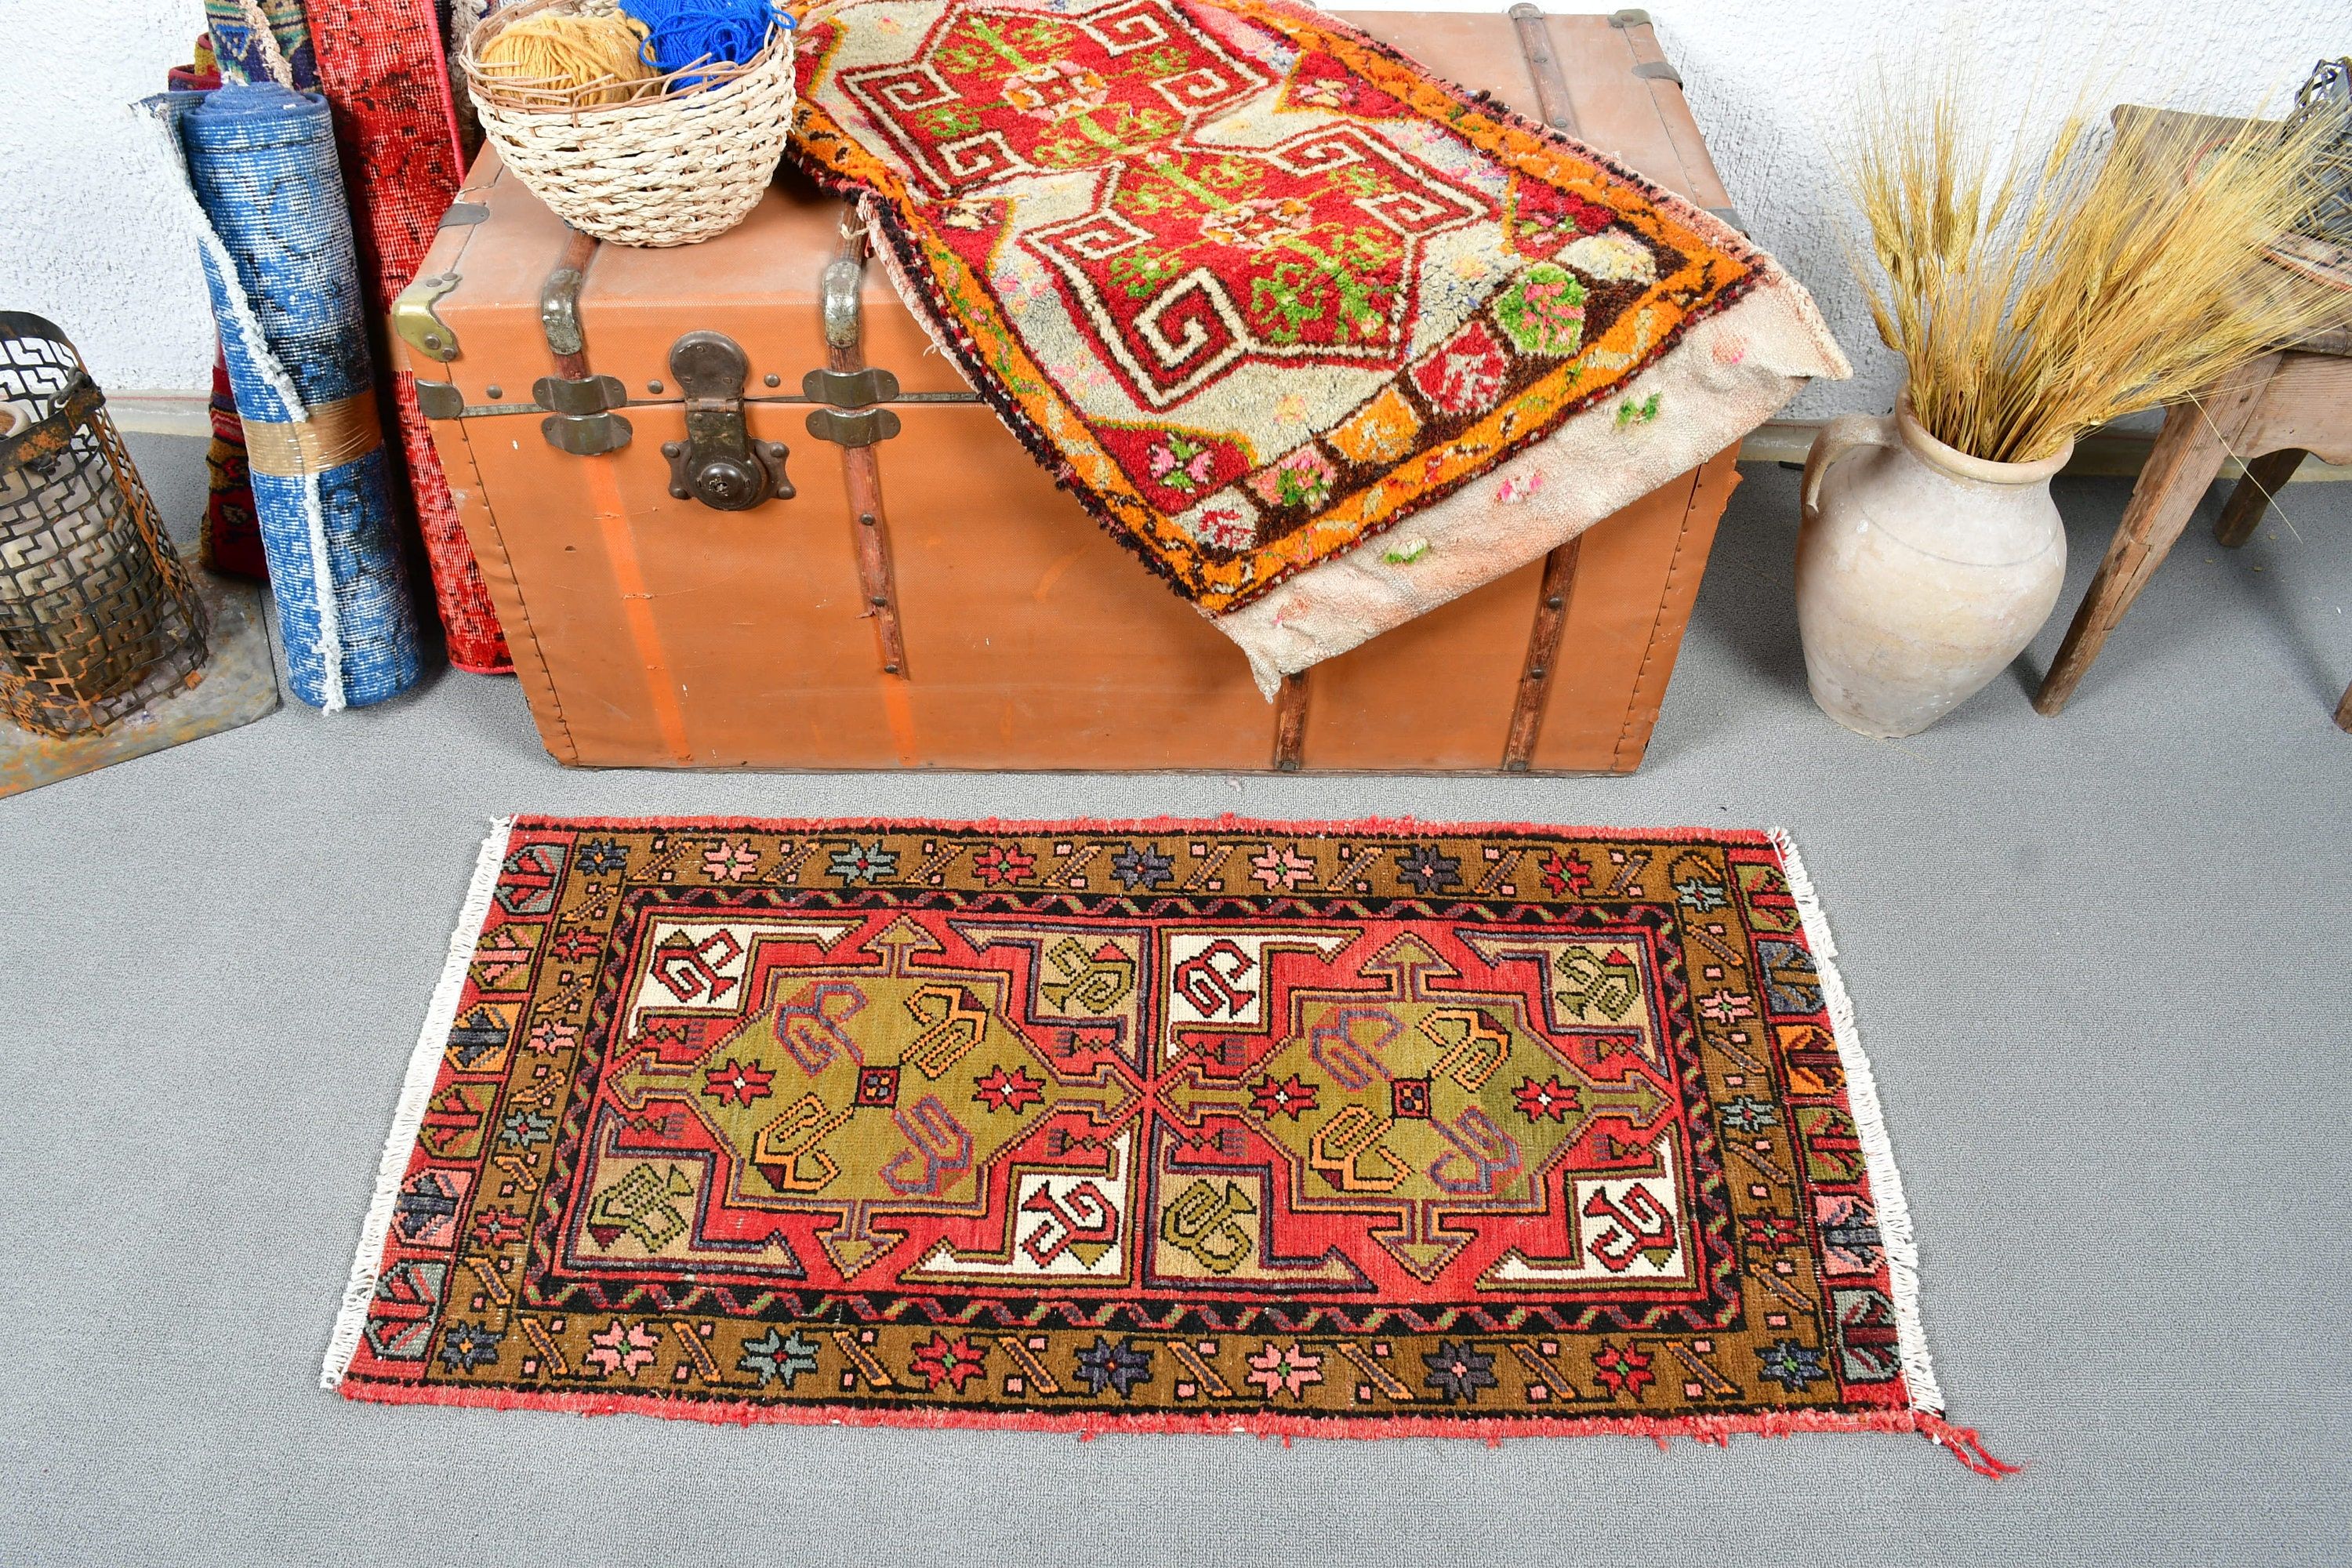 Moroccan Rug, Turkish Rugs, Red Wool Rug, Vintage Rug, Wall Hanging Rug, Bathroom Rug, 1.8x3.6 ft Small Rug, Aztec Rug